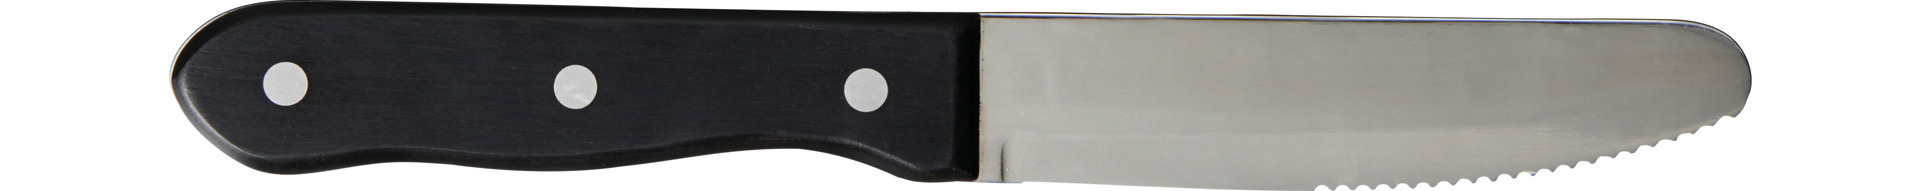 Steakmesser 250 mm Wellenschliff gerundete Klinge, Kunststoffgriff